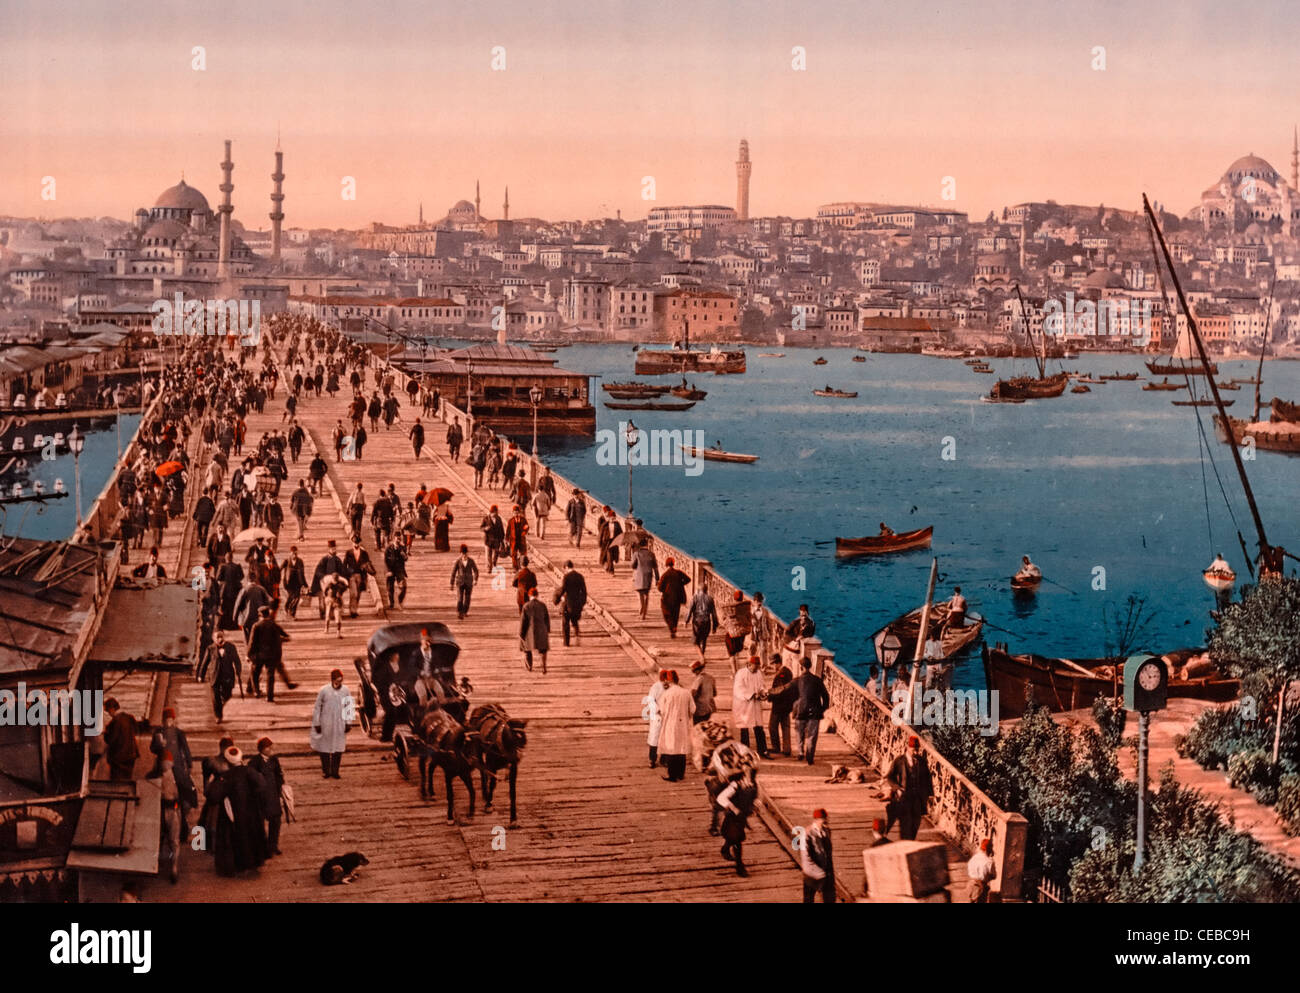 Kara-Keui (Galata) bridge, Constantinople, Turkey, circa 1900 Stock Photo